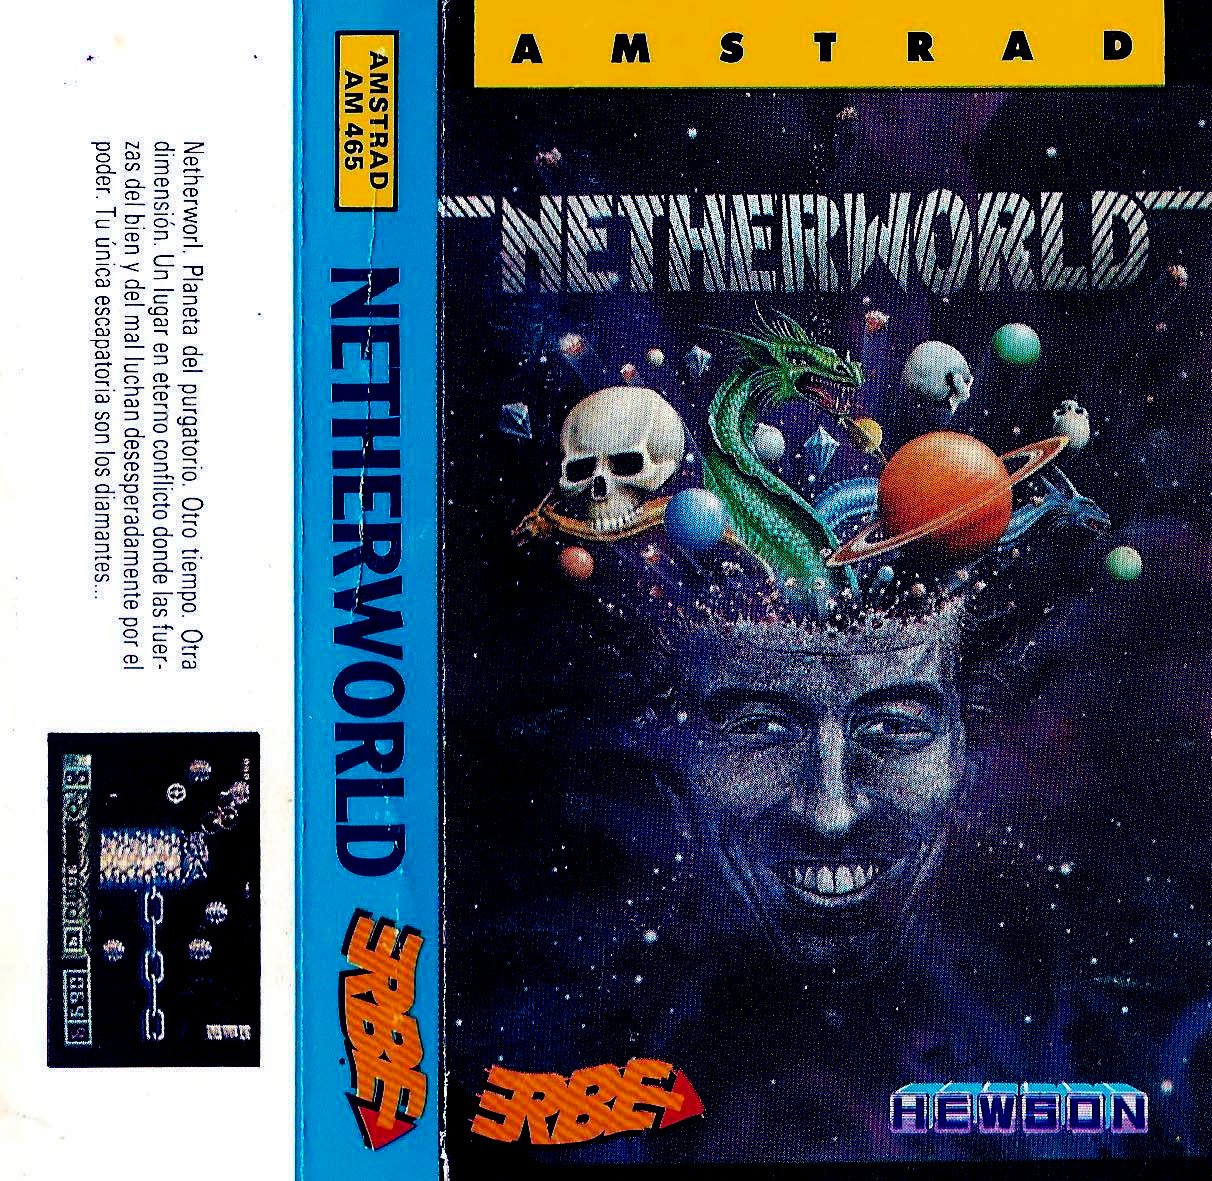 Caratula de Netherworld para Amstrad CPC